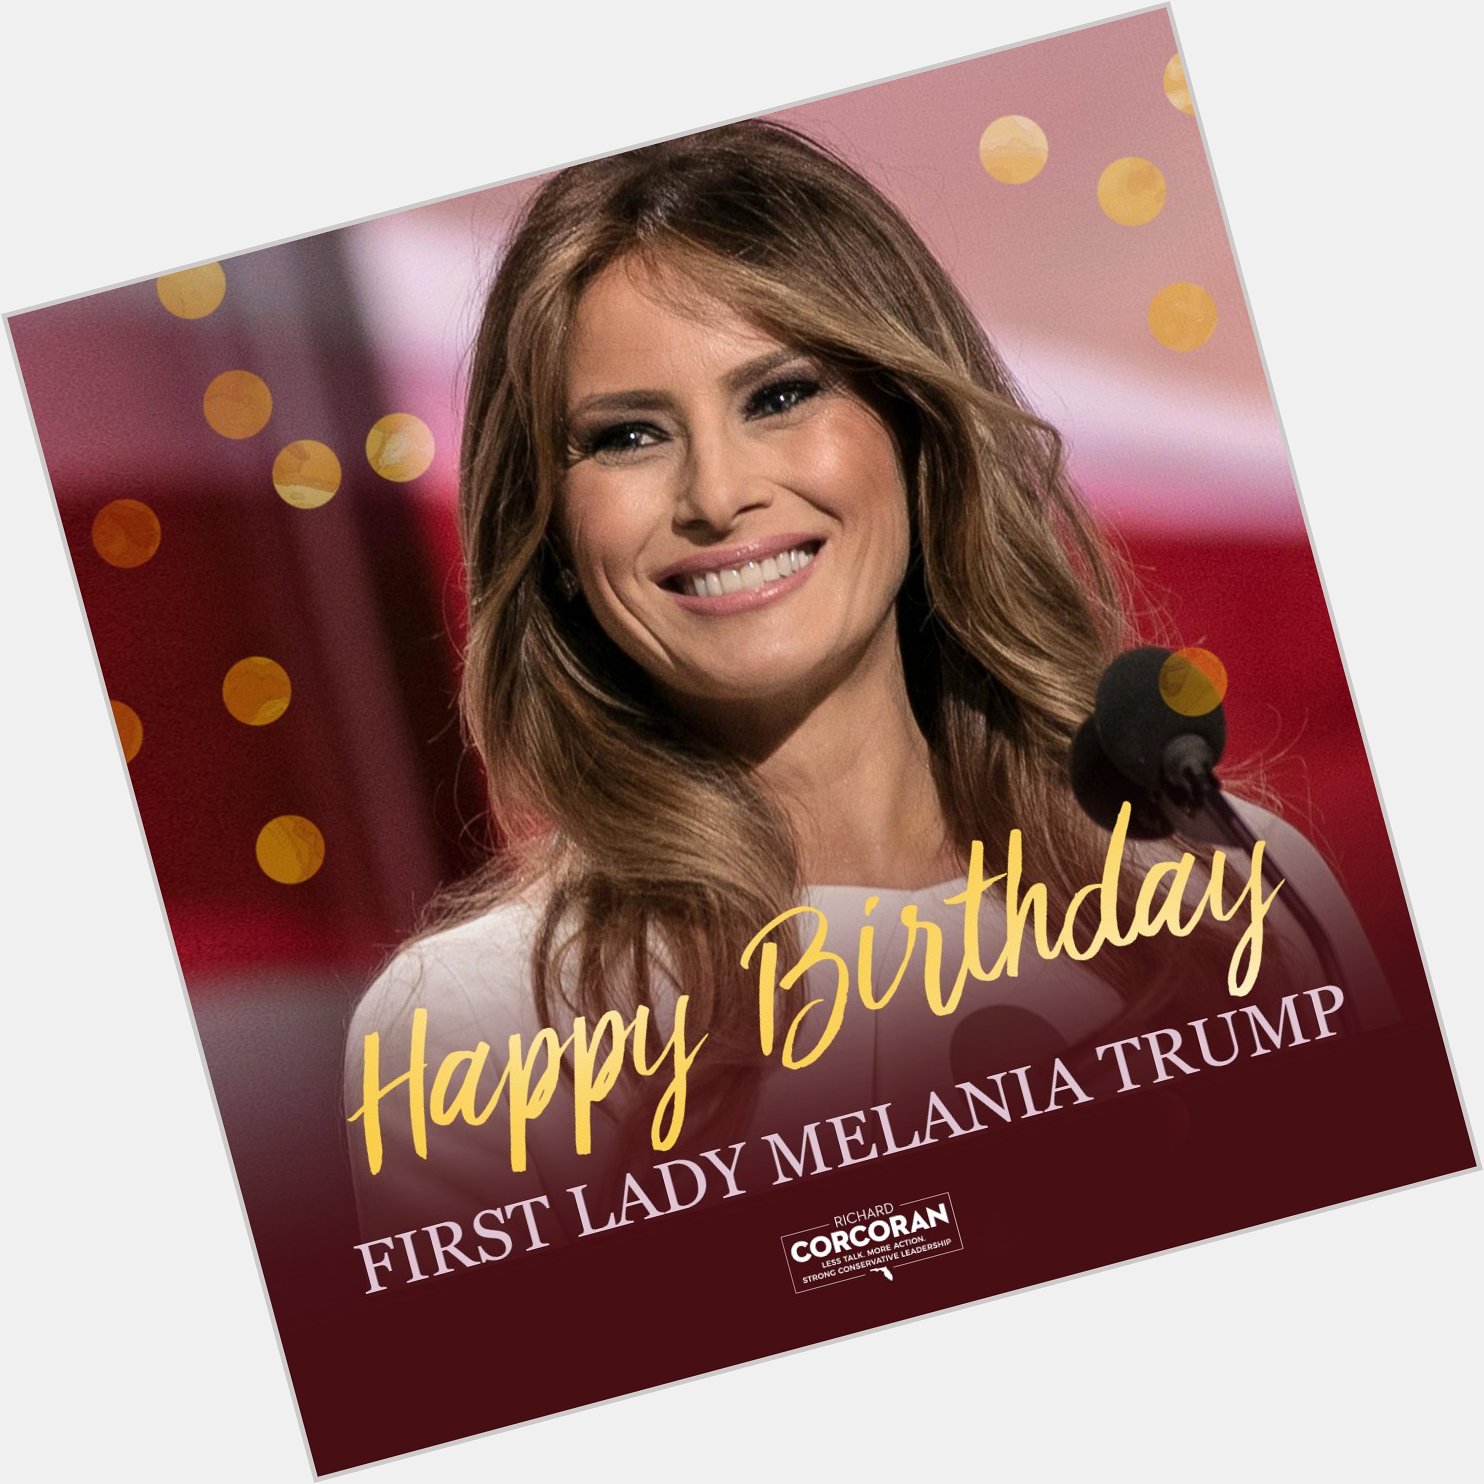 Happy Birthday to our terrific Melania Trump! 